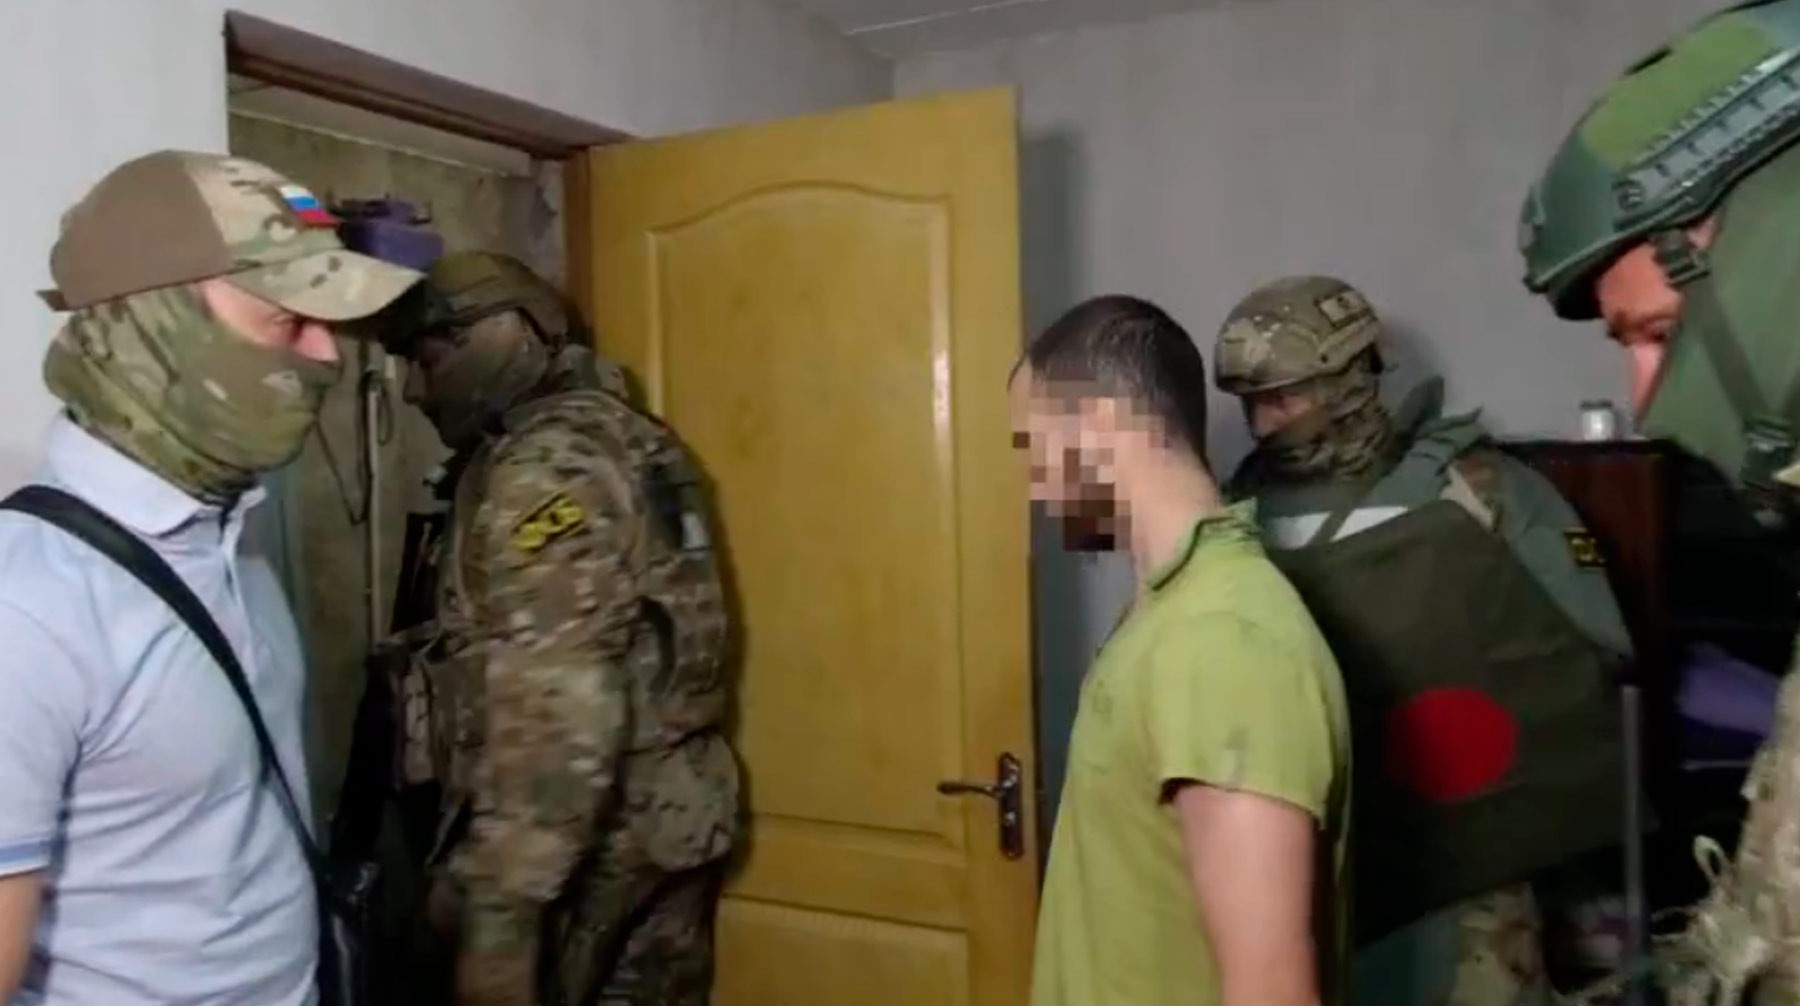 Dailystorm - ФСБ задержала в Крыму трех главарей «Хизб ут-Тахрир» — видео